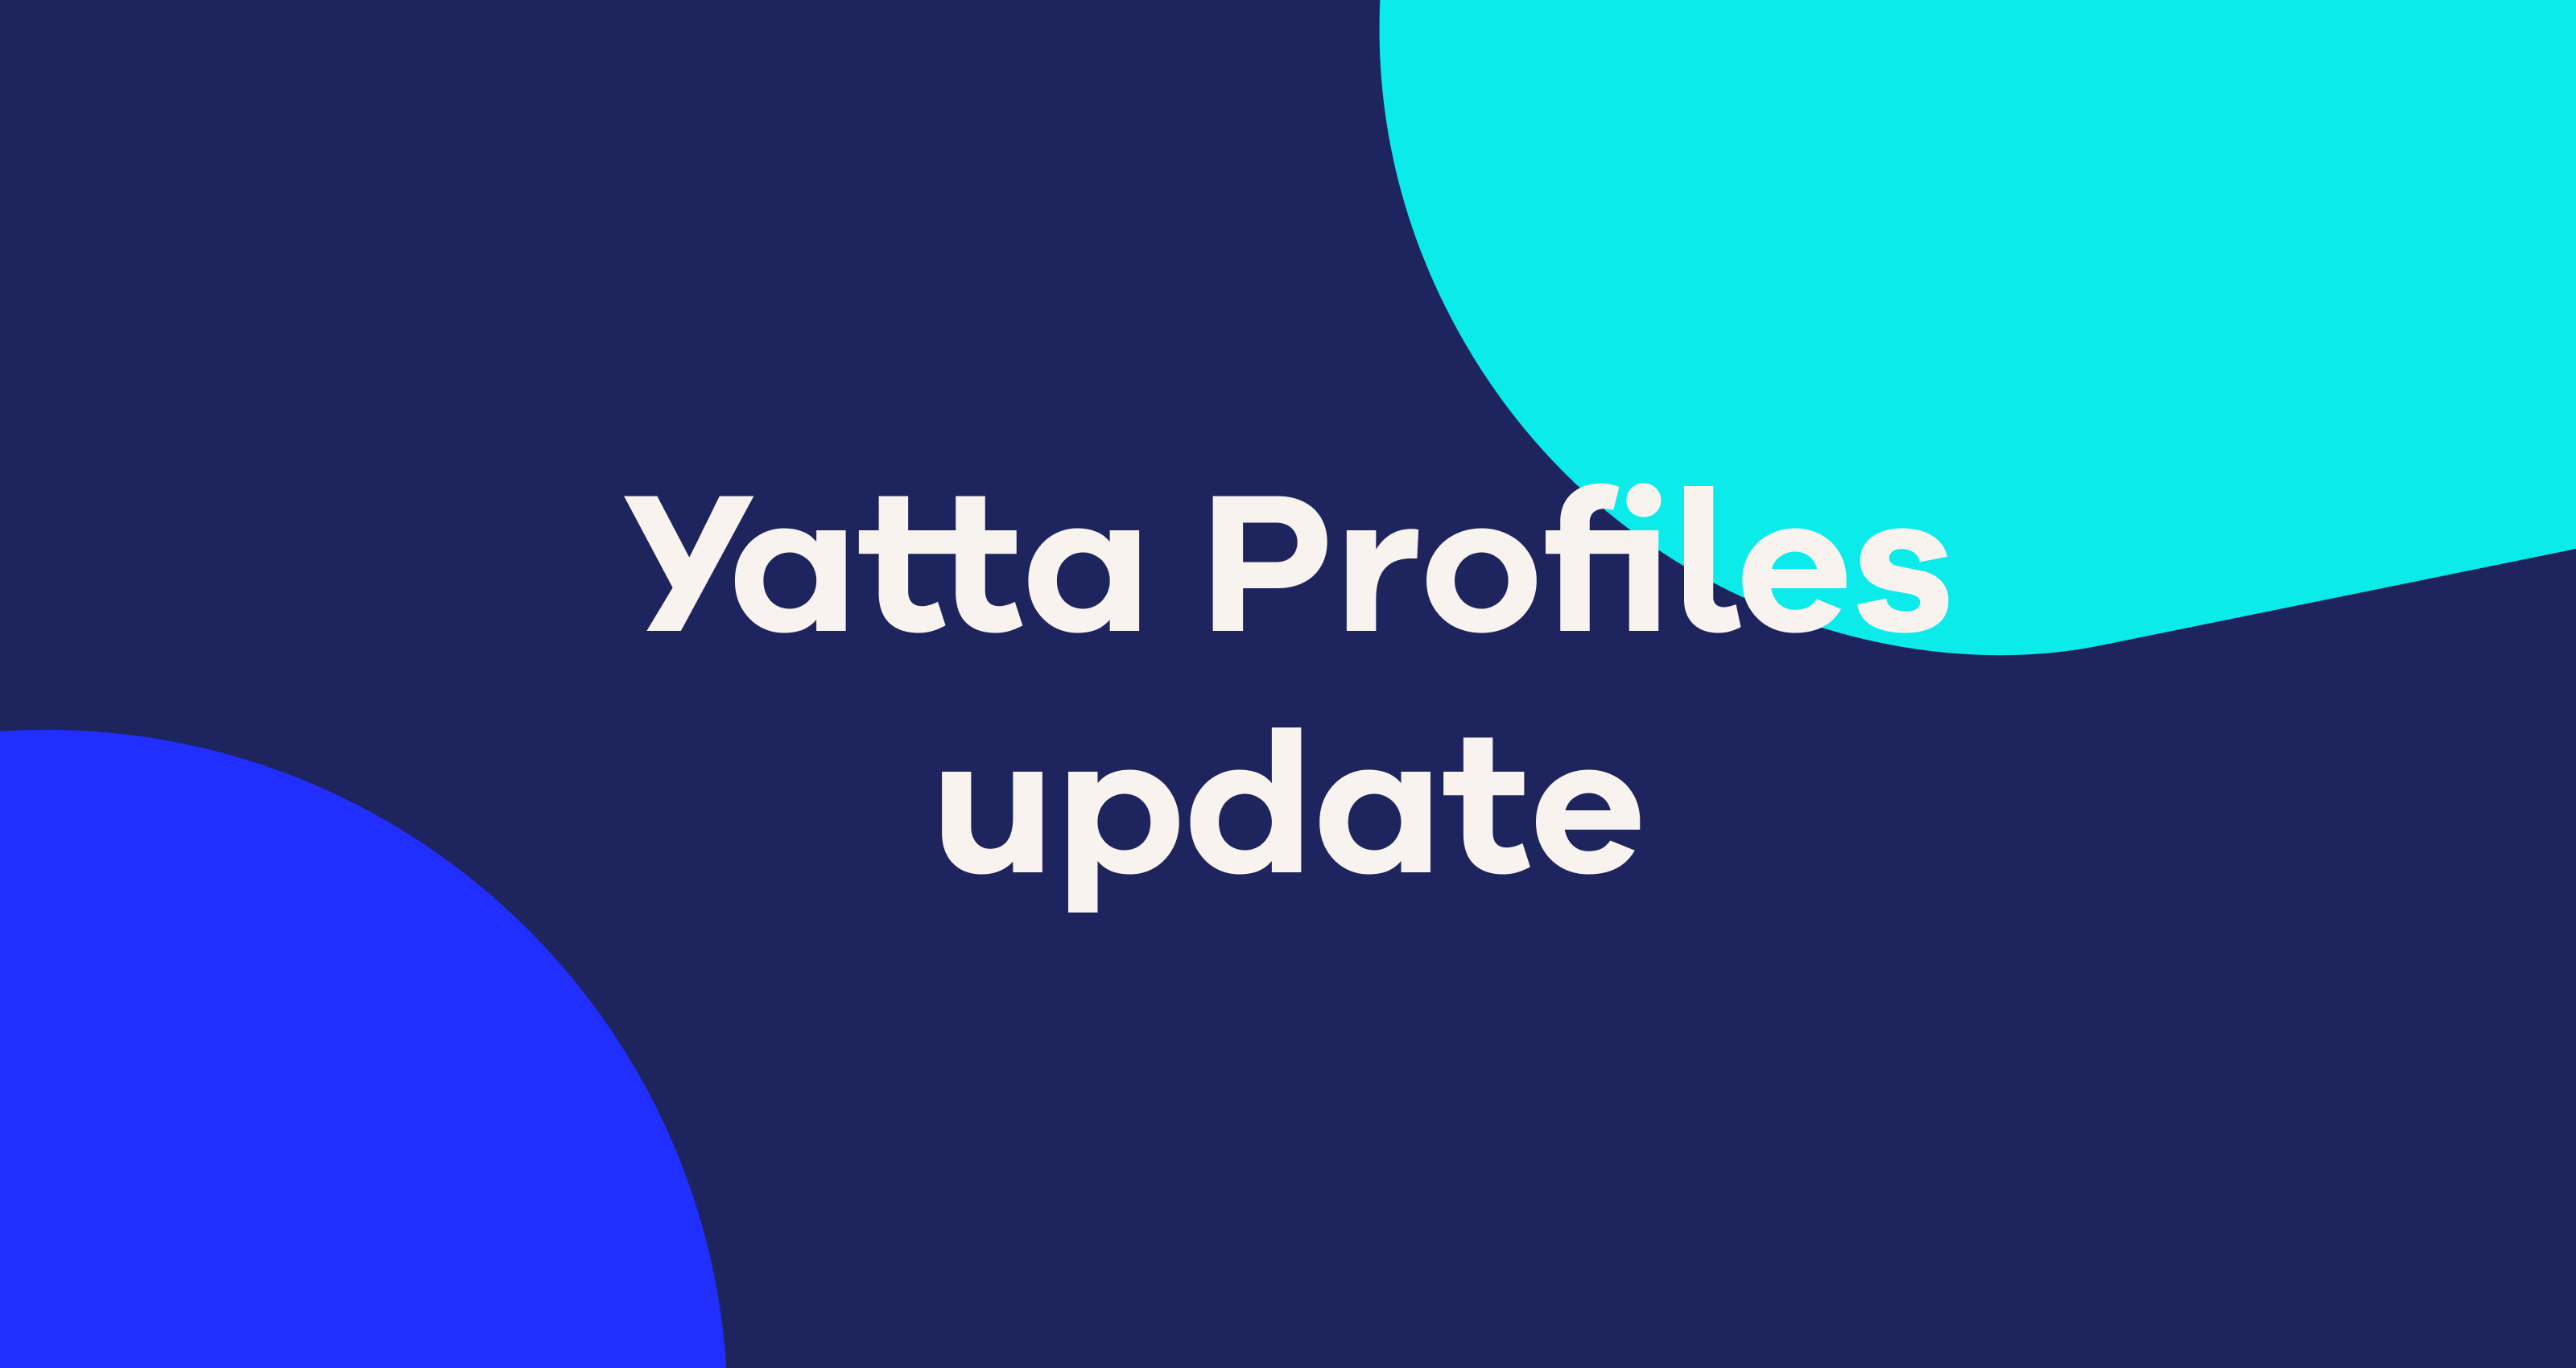 Yatta Profiles update